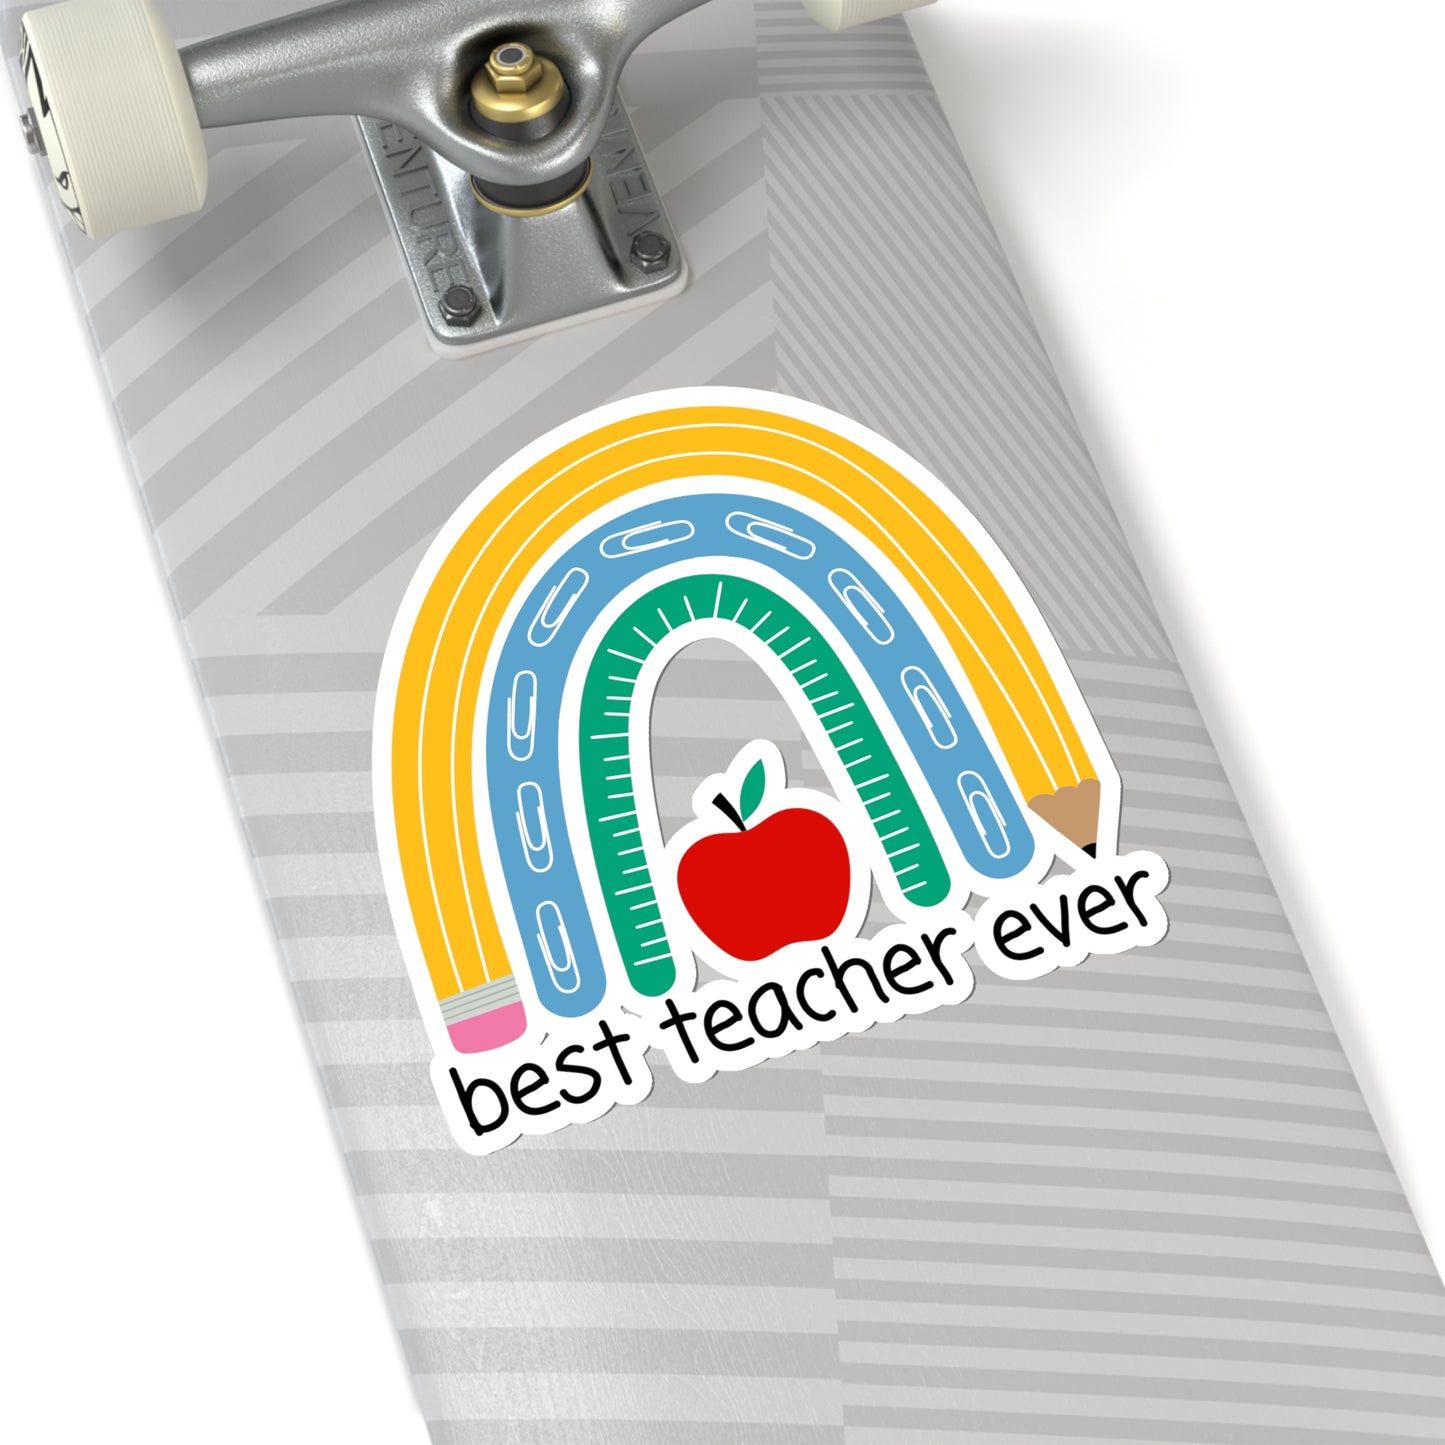 Best Teacher Sticker, Elementary Kindergarten School Appreciation Laptop Decal Vinyl Cute Waterbottle Tumbler Car Waterproof Bumper Wall